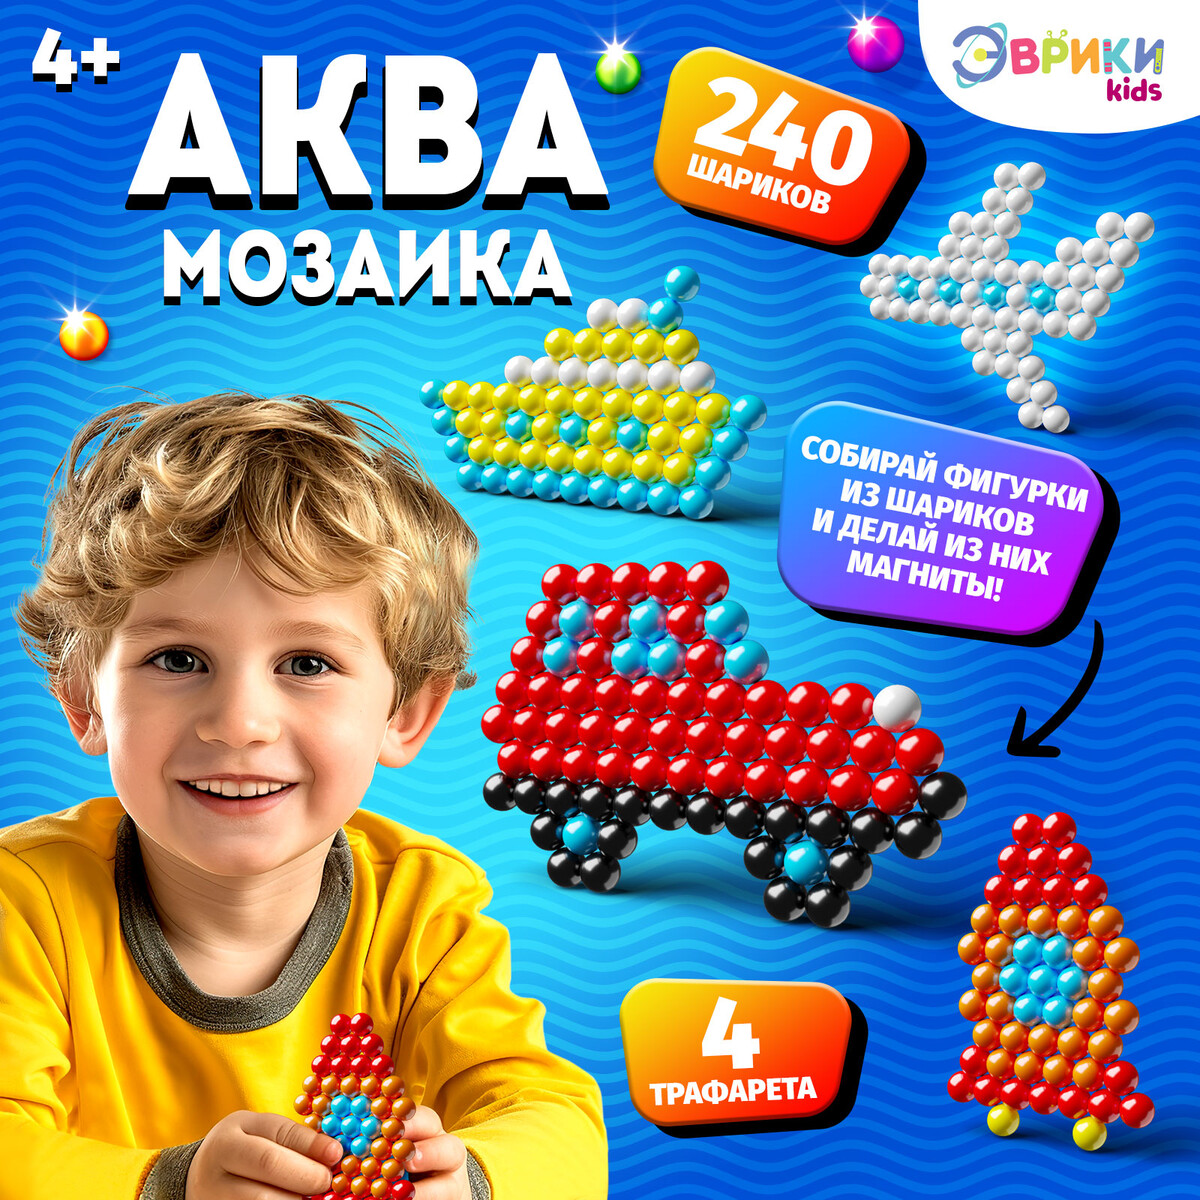 Аквамозаика для детей шпаргалки для мамы настольная игра для детей сочиняем истории мини кубики 3 10 лет